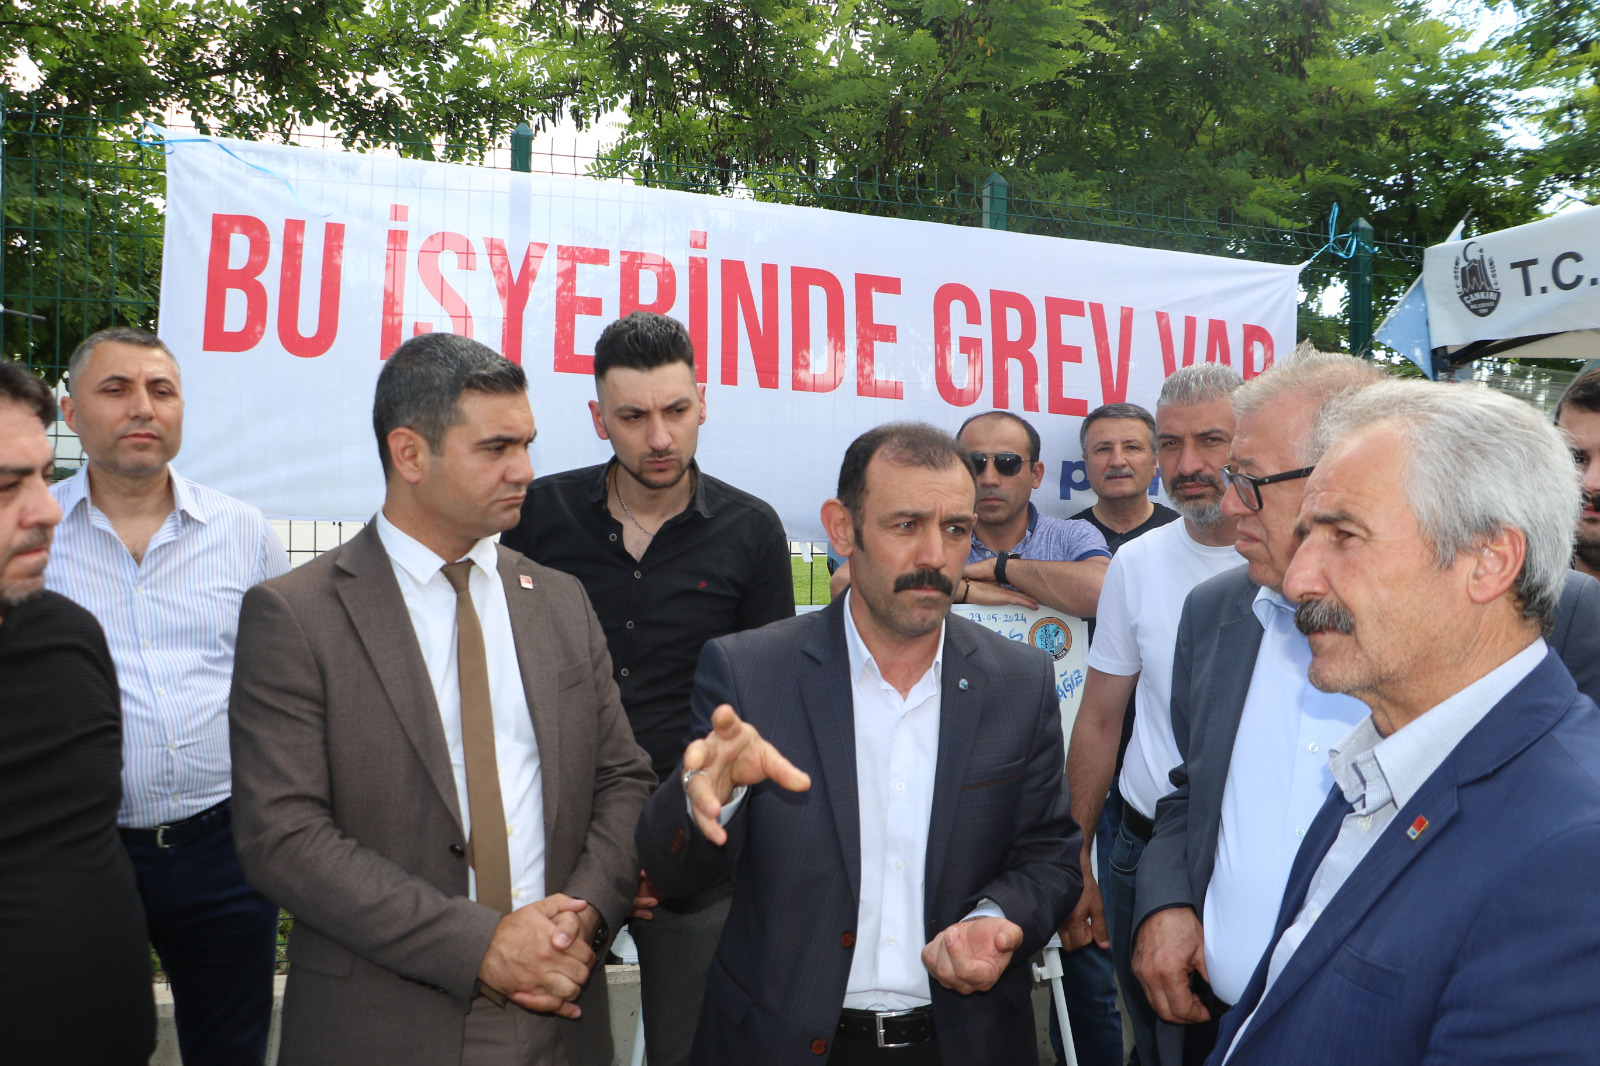 kirikkale-sumitomo-iscisi-cankiri-lastik-fabrikasi-destek-6 Kırıkkale'den Çankırı Lastik Fabrikası İşçisine Destek: Zafer Direnen Emekçinin Olacak